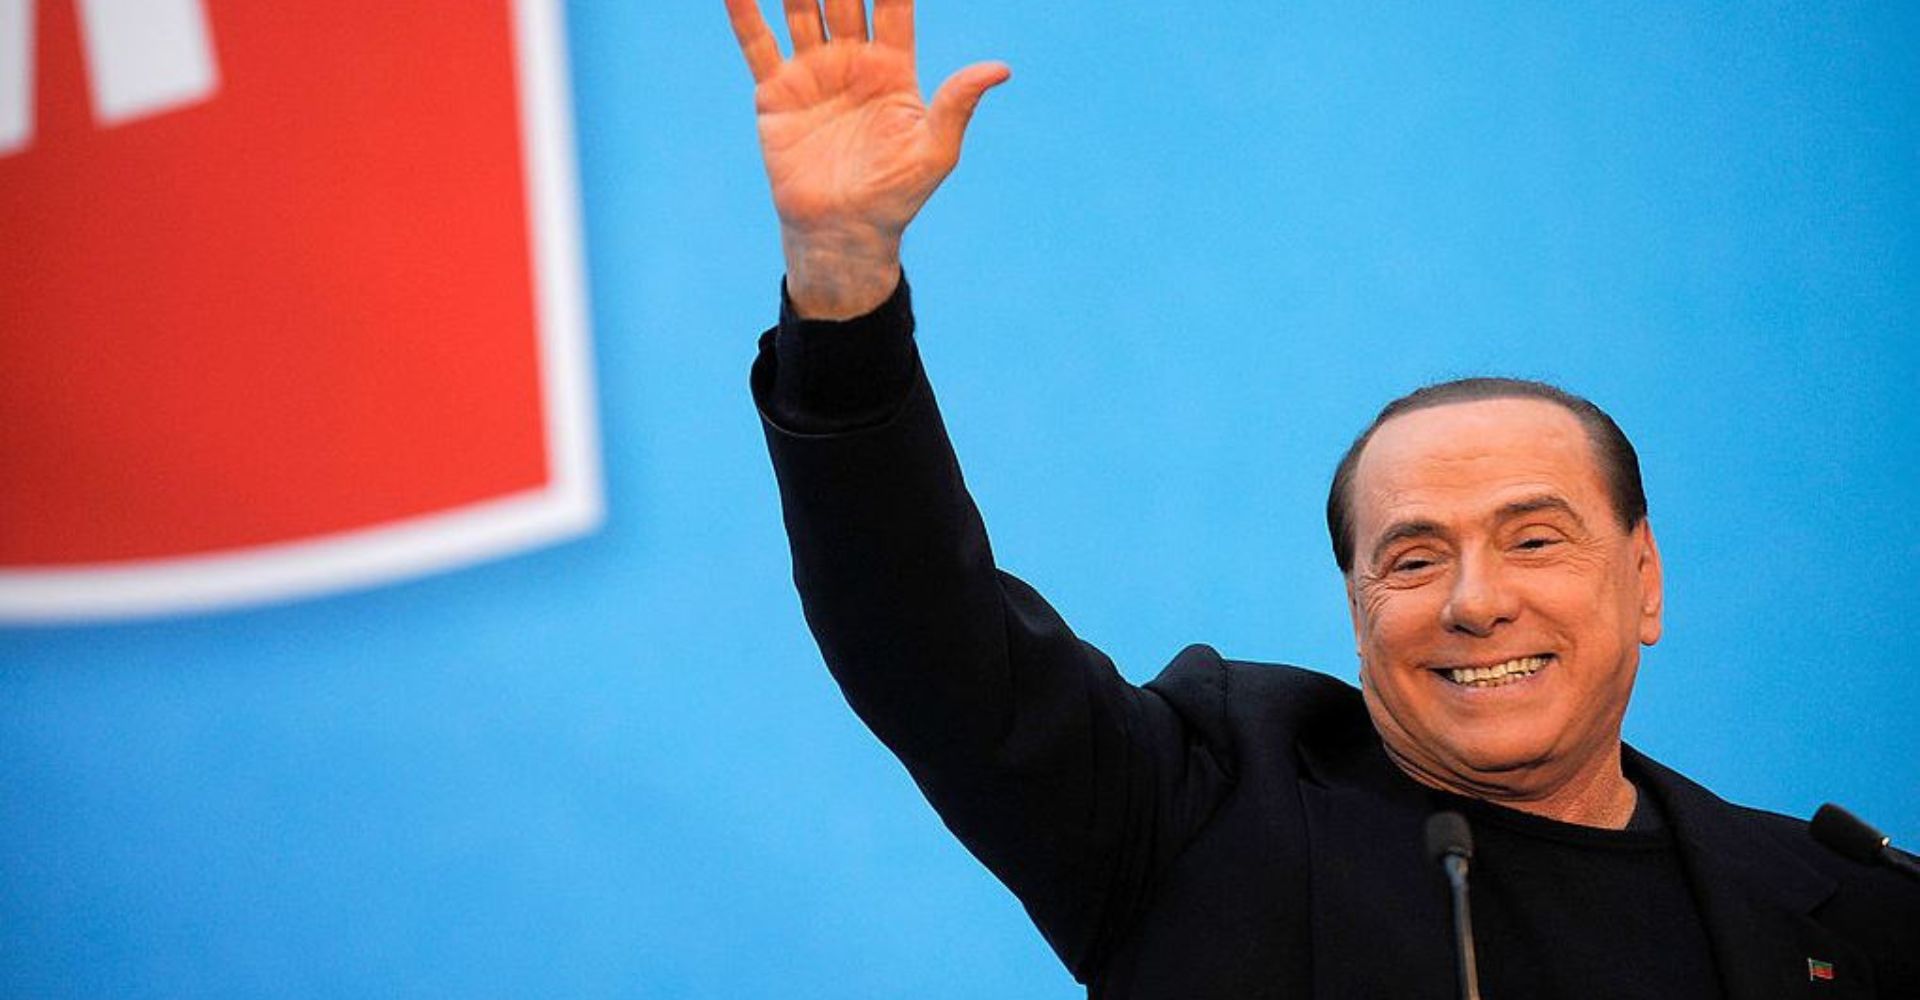 Addio a Silvio Berlusconi, l’ex premier e leader di Forza Italia muore a 86 anni